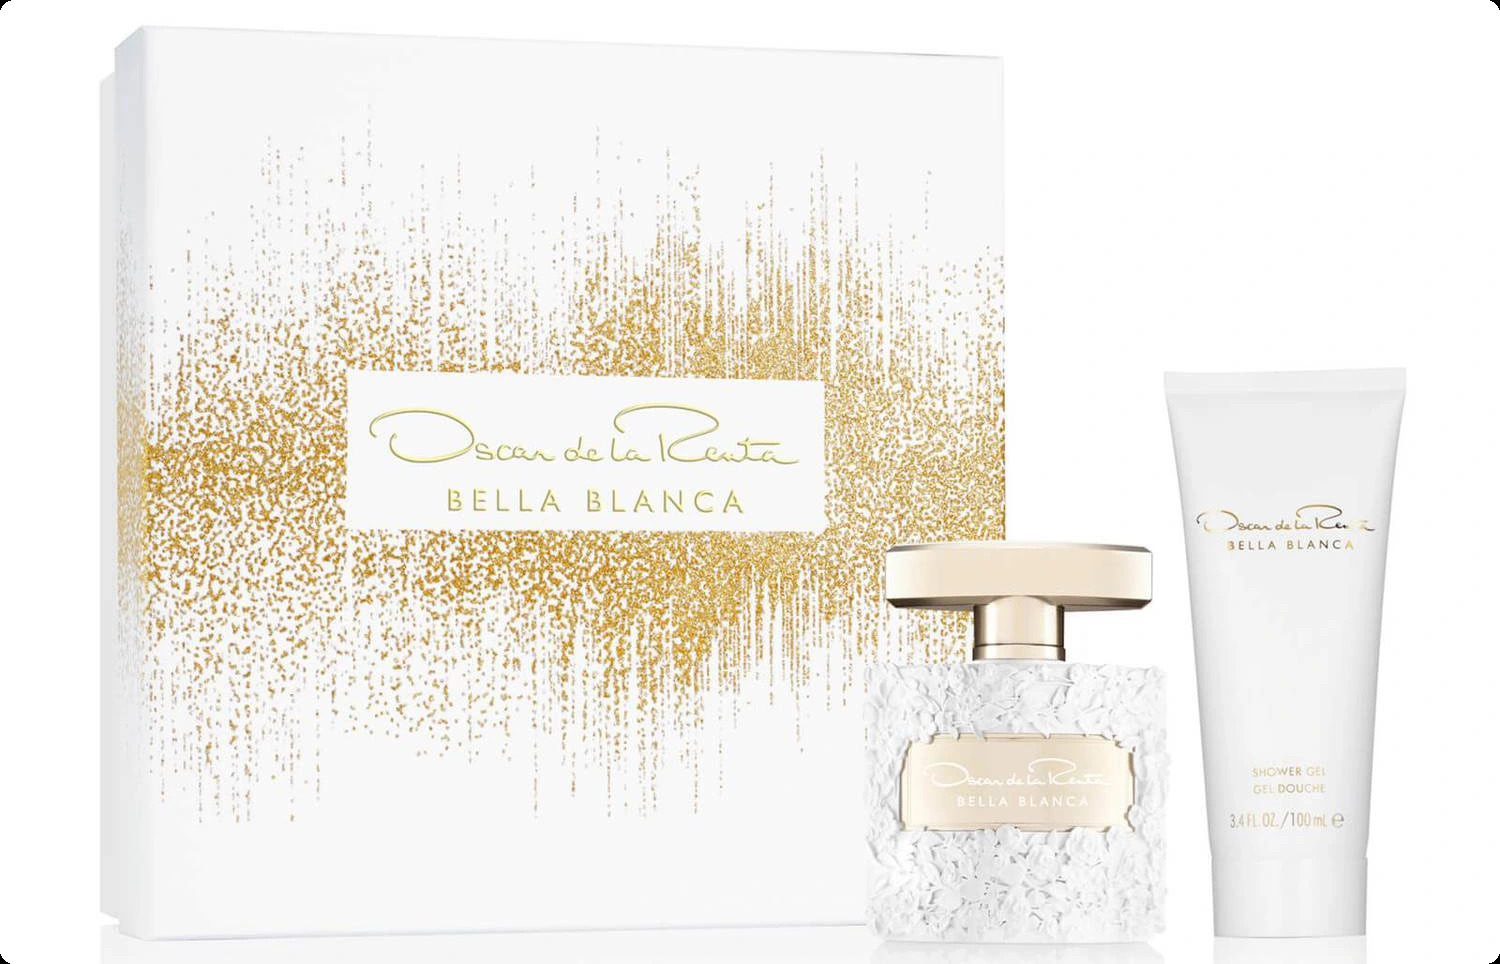 Oscar De La Renta Bella Blanca Набор (парфюмерная вода 50 мл + гель для душа 100 мл) для женщин